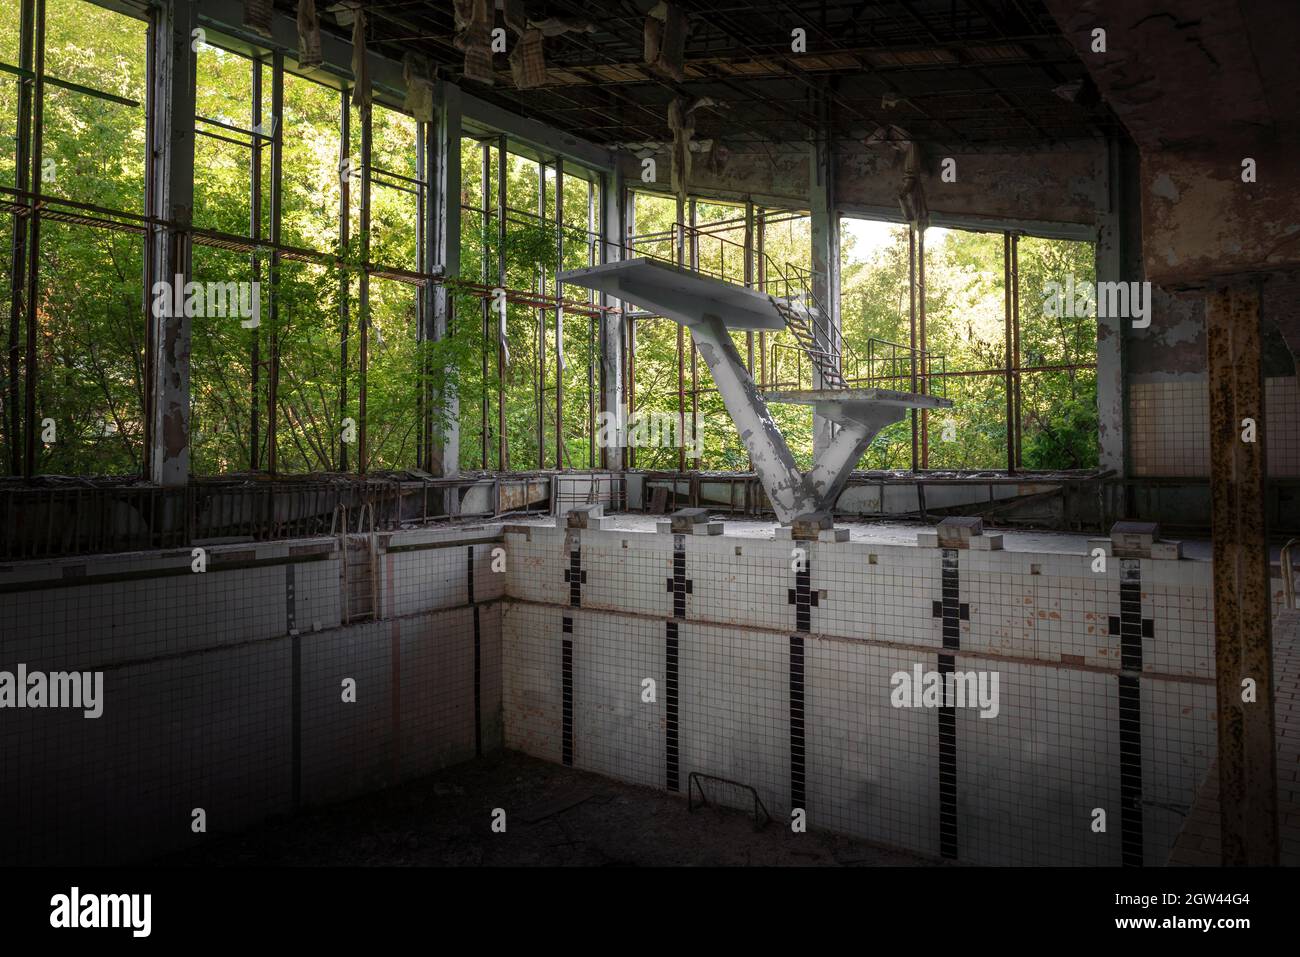 Sprungbrett des Azure Swimming Pool und Sport Center - Pripyat, Tschernobyl-Ausschlusszone, Ukraine Stockfoto